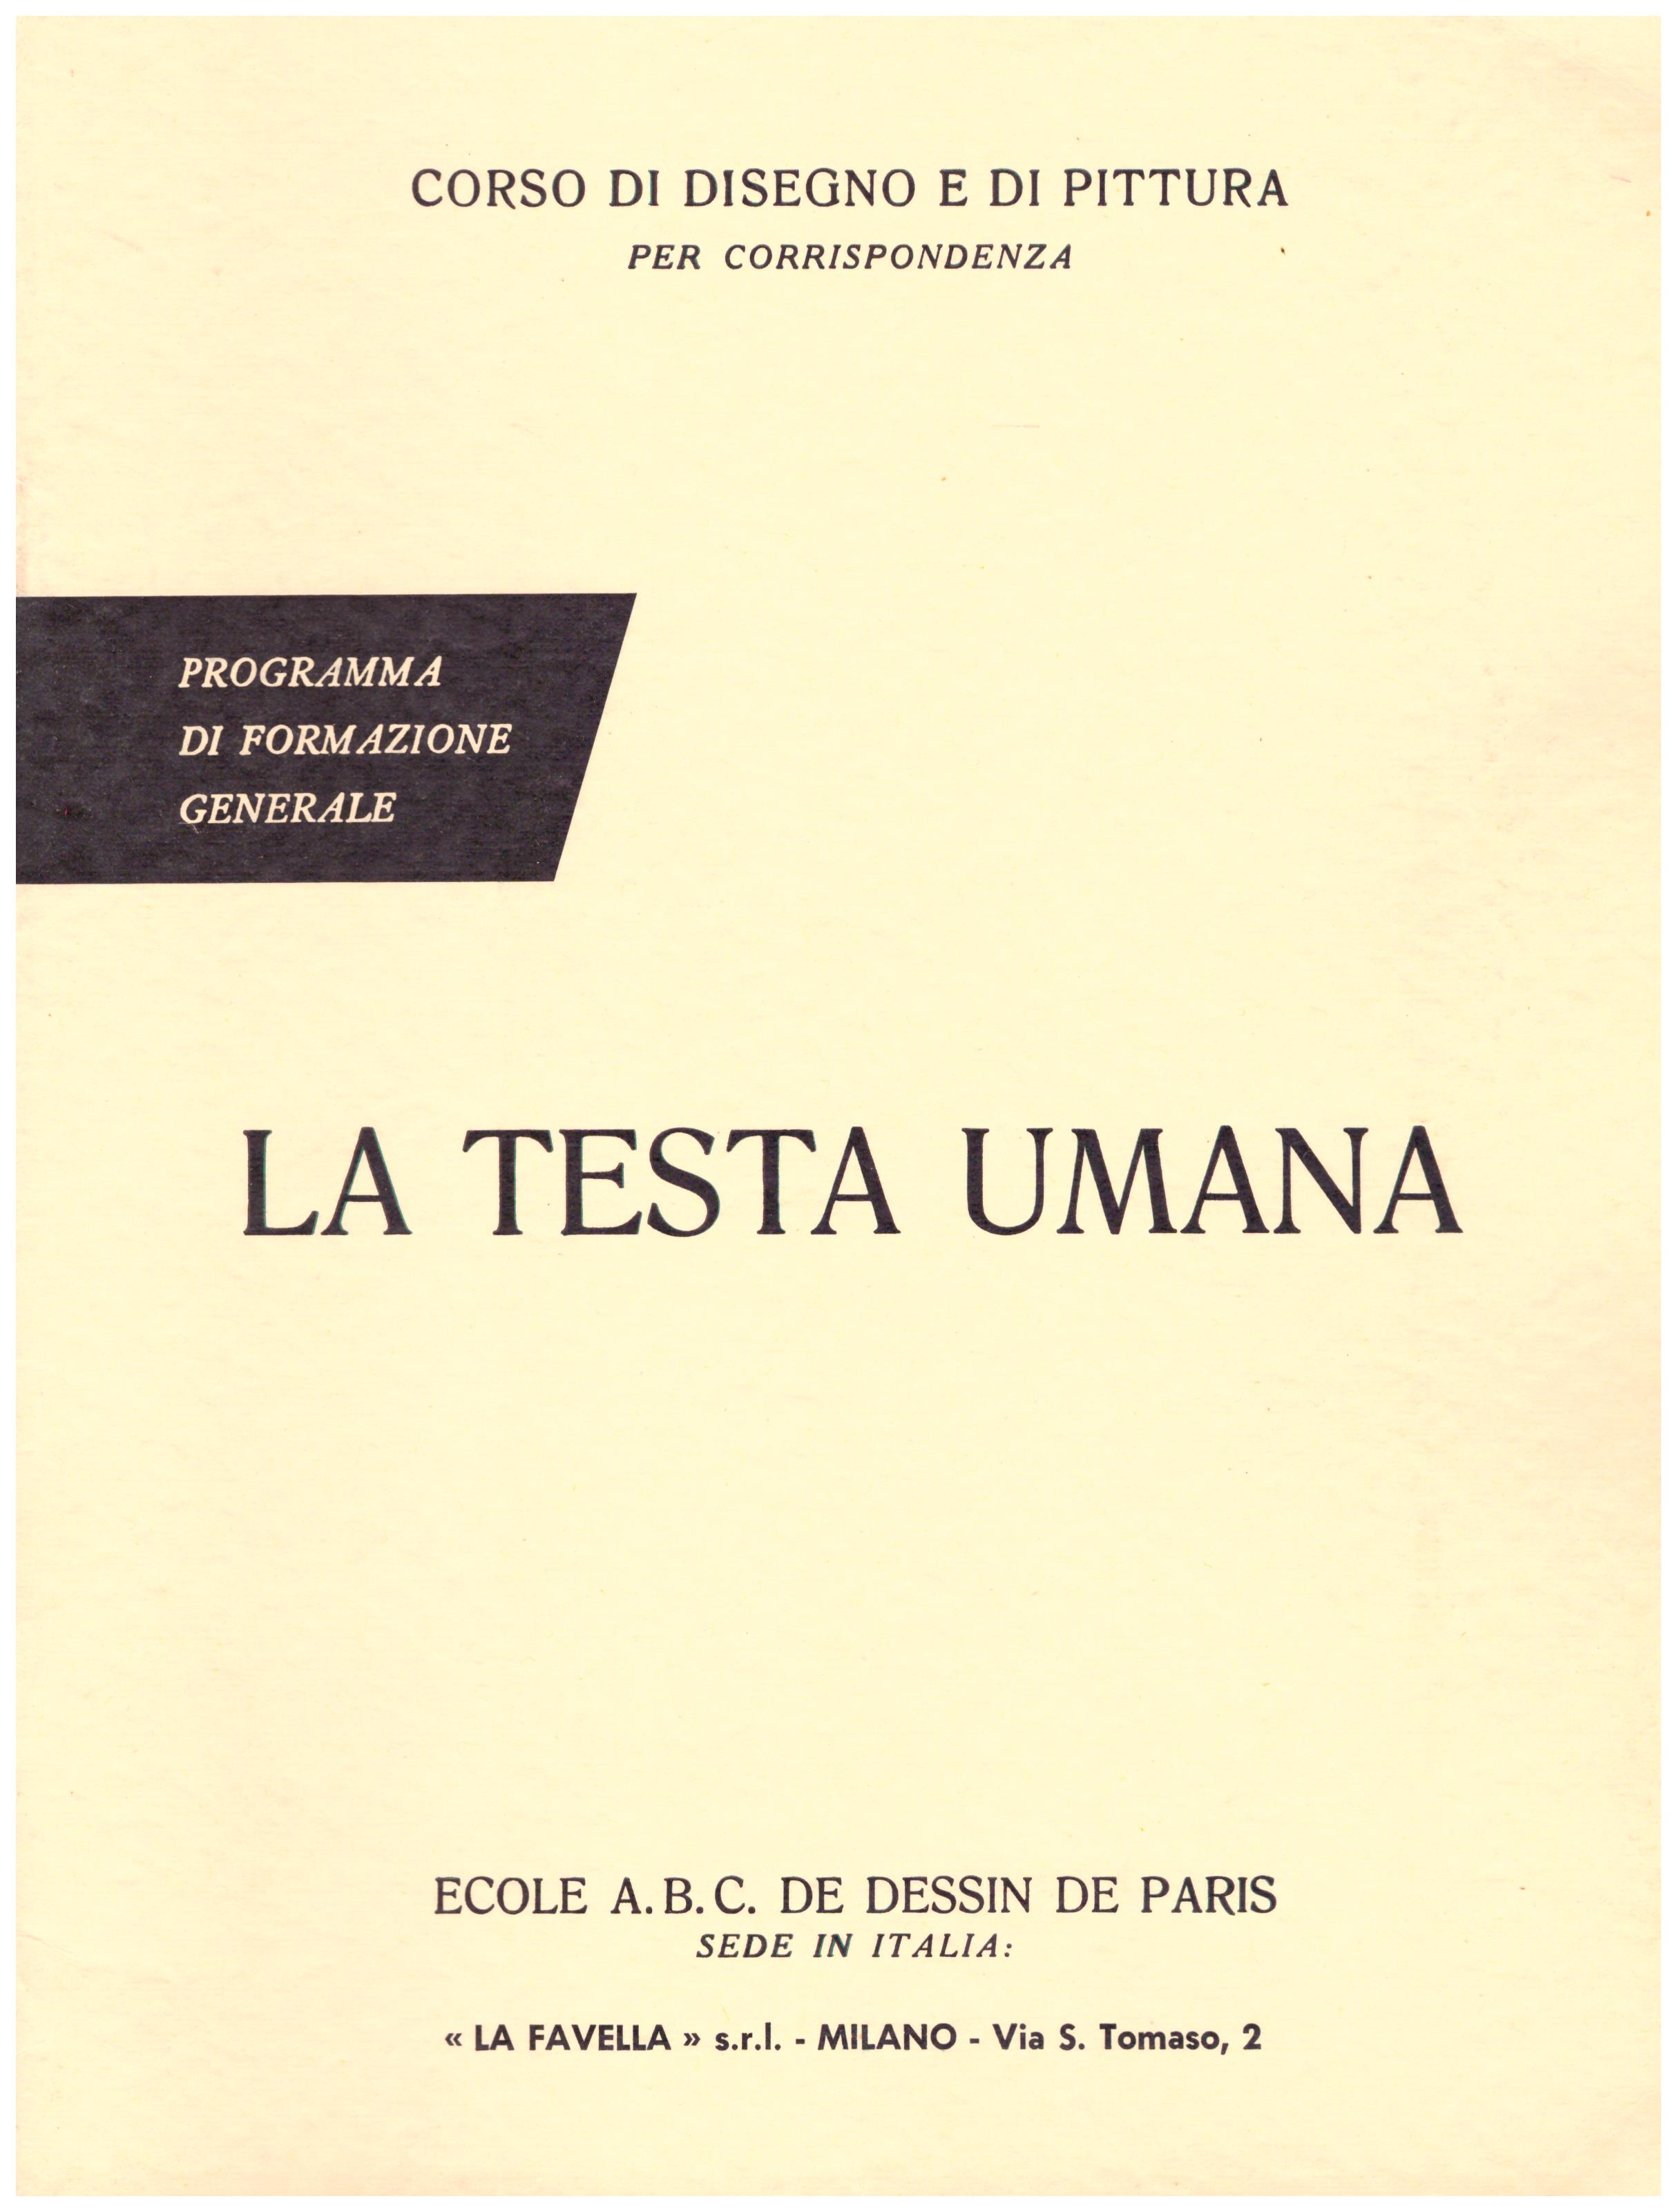 Titolo: Corso di disegno e pittura, la testa umana  Autore: AA.VV.  Editore: Ecole A.B.C. de dessin de Paris sede in Italia: La Favella, Milano 1962